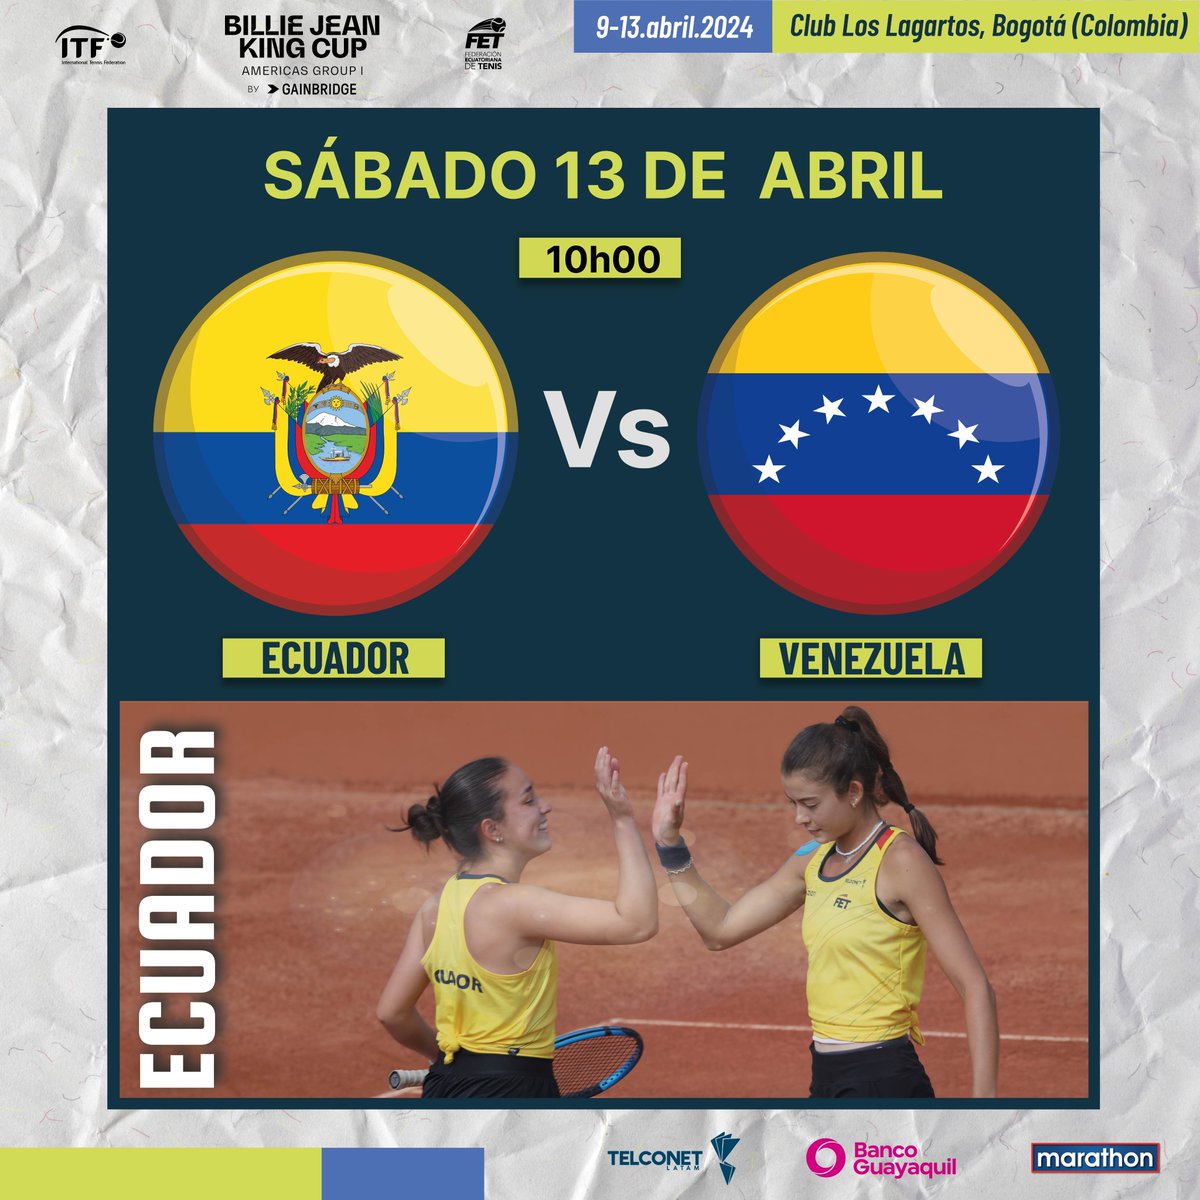 Mañana Ecuador enfrentará a Venezuela en el último día de la Billie Jean King Cup, que se juega del 9 al 13 de abril en el Club Los Lagartos, Bogotá (Colombia). @BJKCup Gracias al auspicio de: @TelconetLatam @BancoGuayaquil @marathonsports_